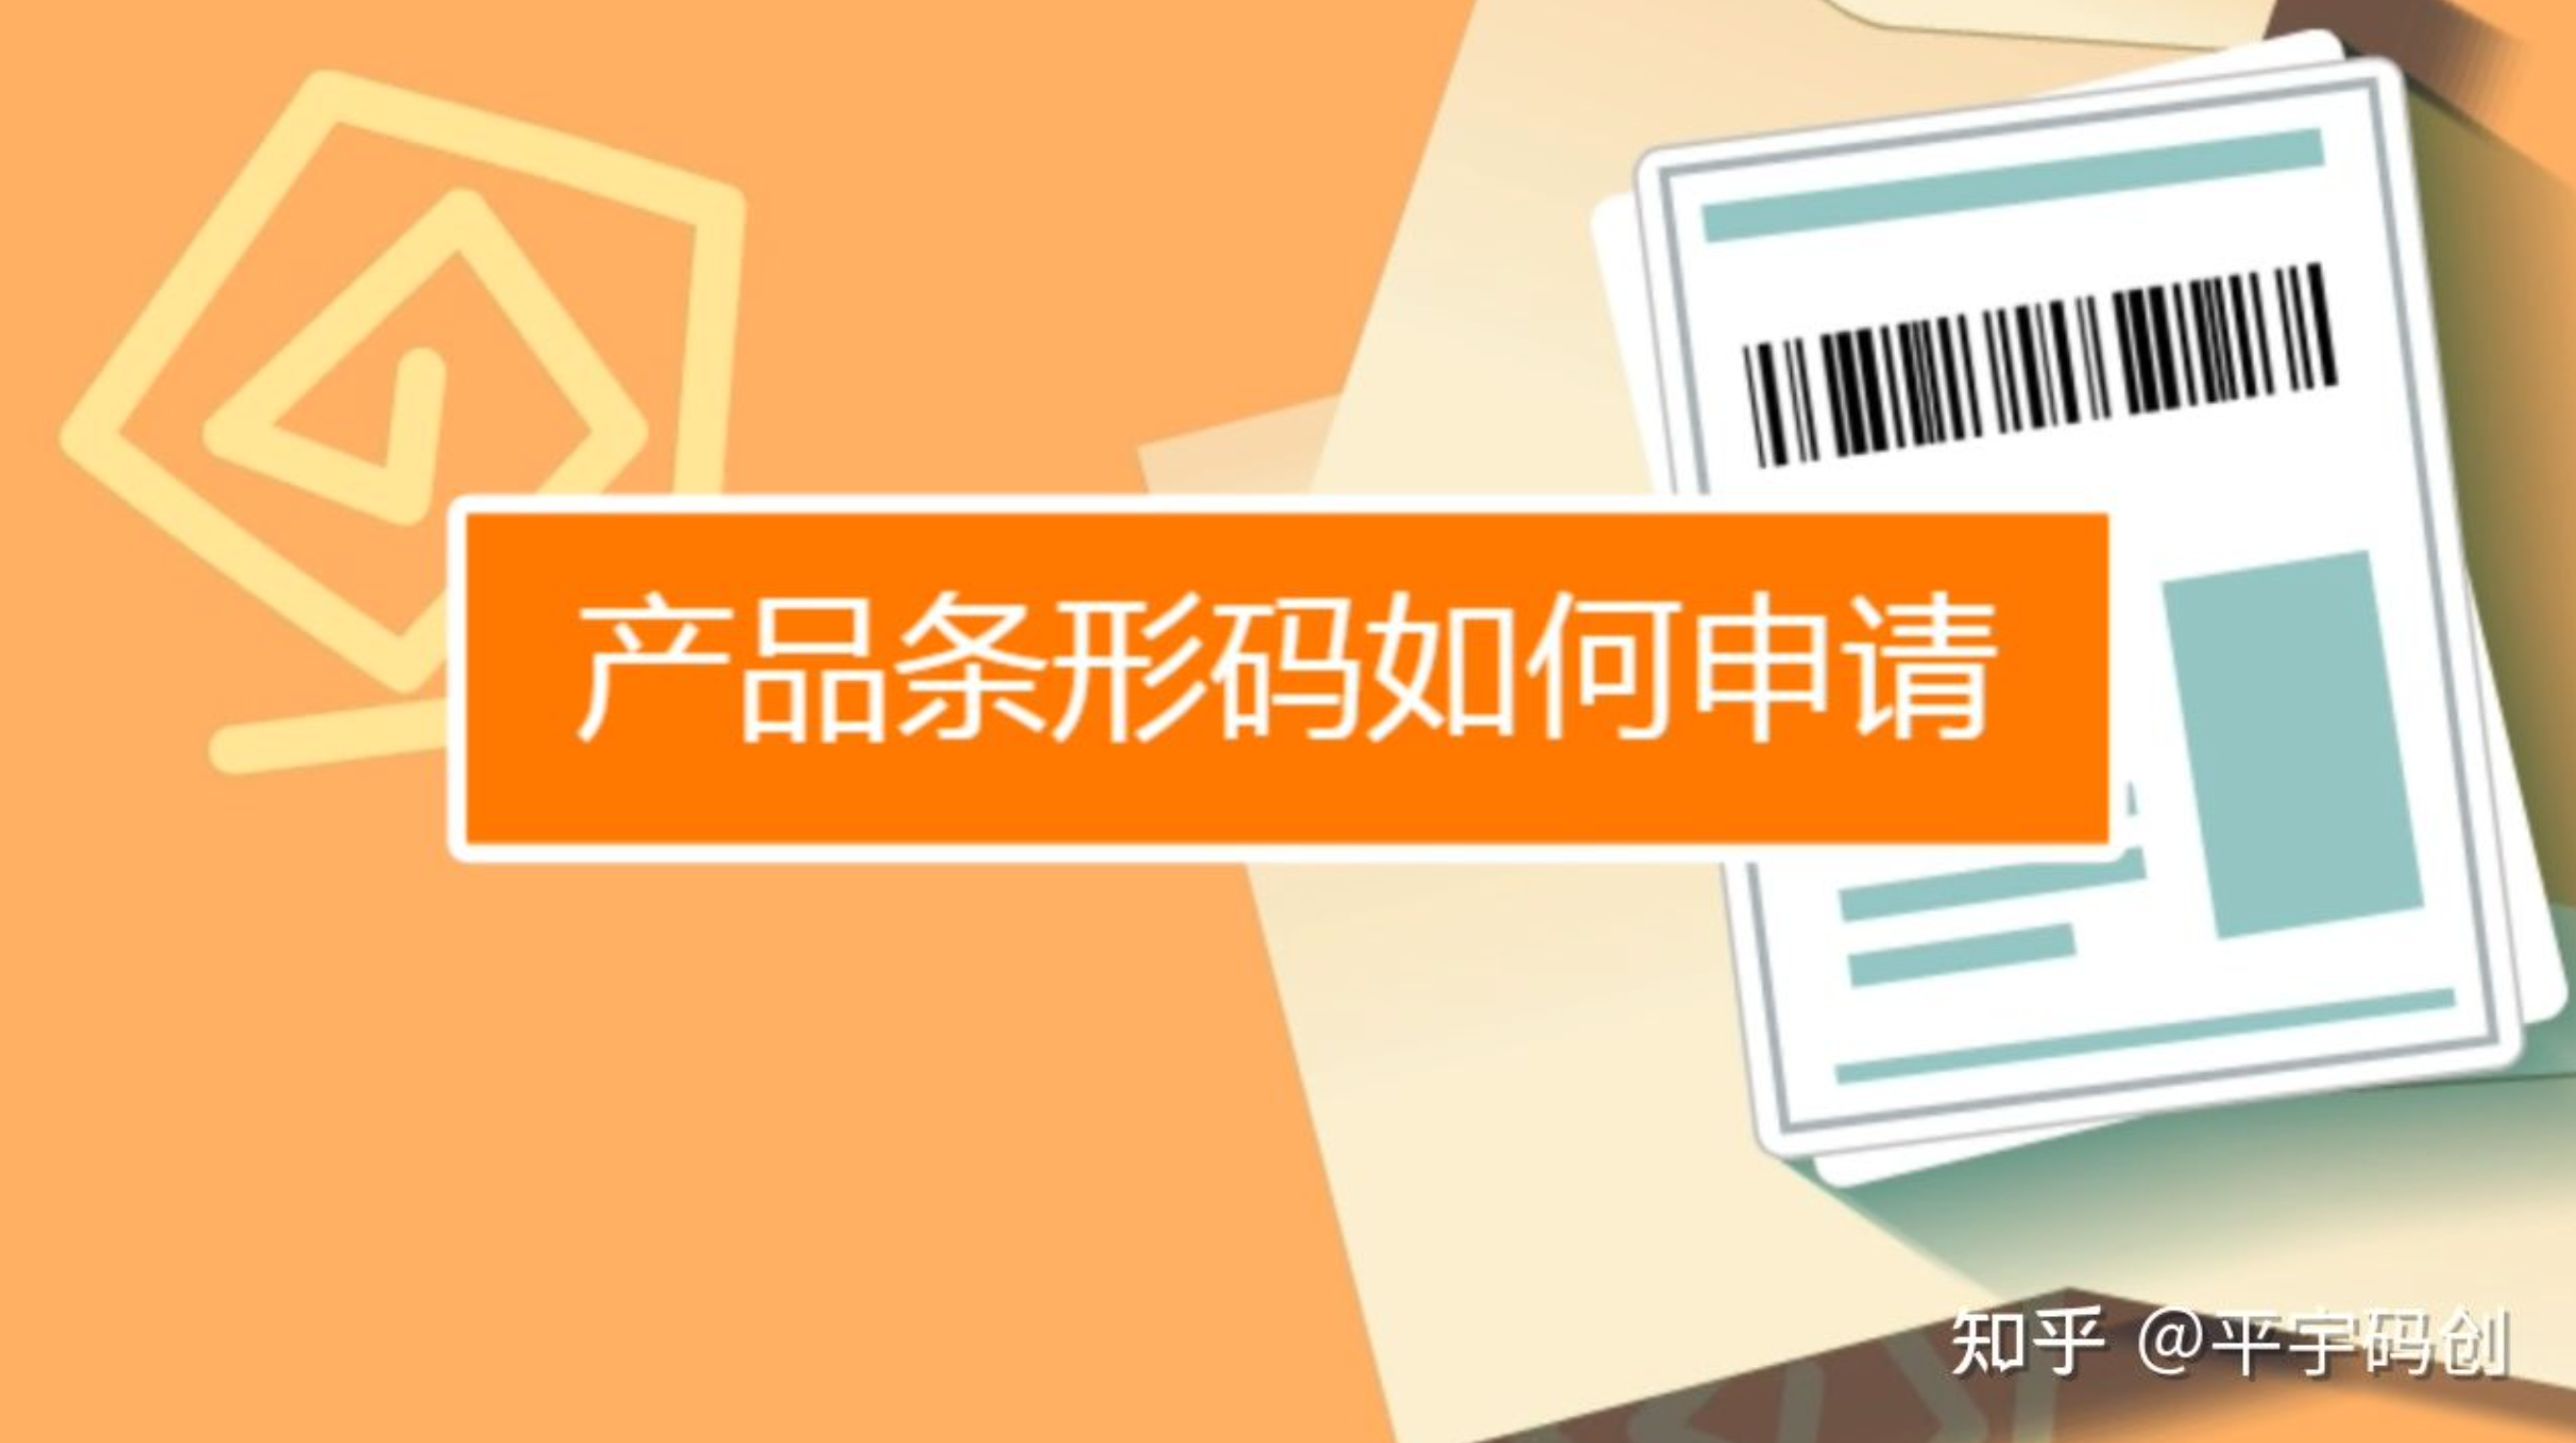 北京市条码与物品编码技术服务中心图片